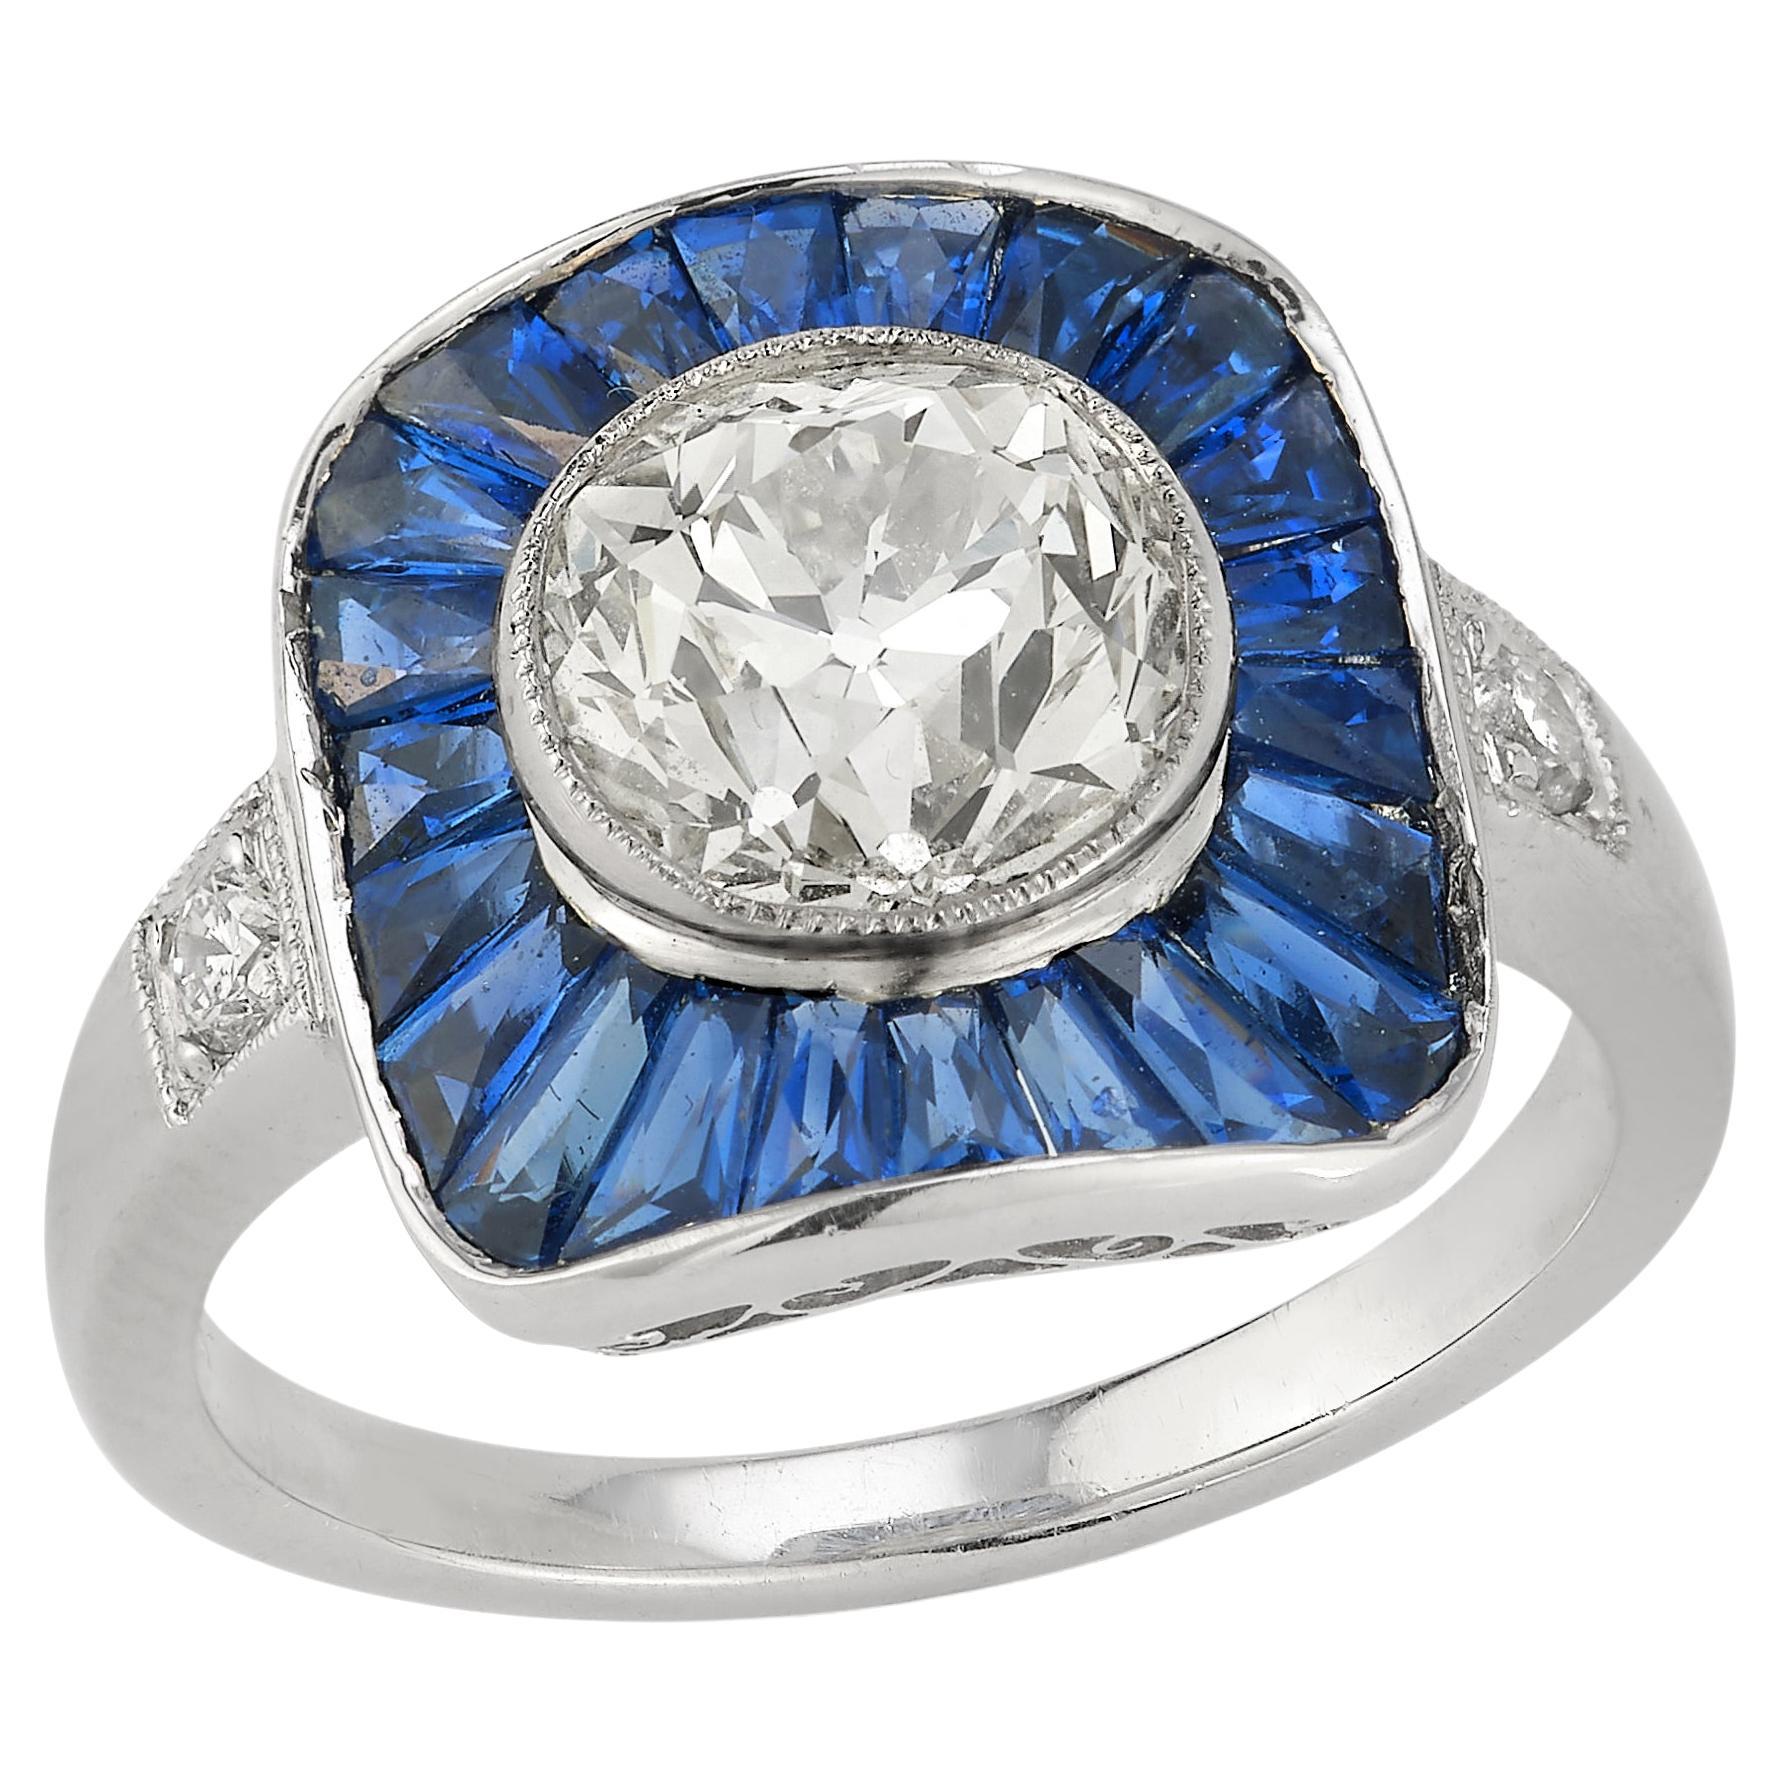 Old Mine Diamant & Saphir Target Ring

1 zentraler Diamant von ca. 2,16 Karat, umrahmt von 22 Saphiren mit einem Gewicht von ca. 1,61 Karat, mit 2 runden Diamanten von ca. 0,010 Karat, alle in einem Platinring gefasst

Ring Größe: 6.5
Kostenfrei